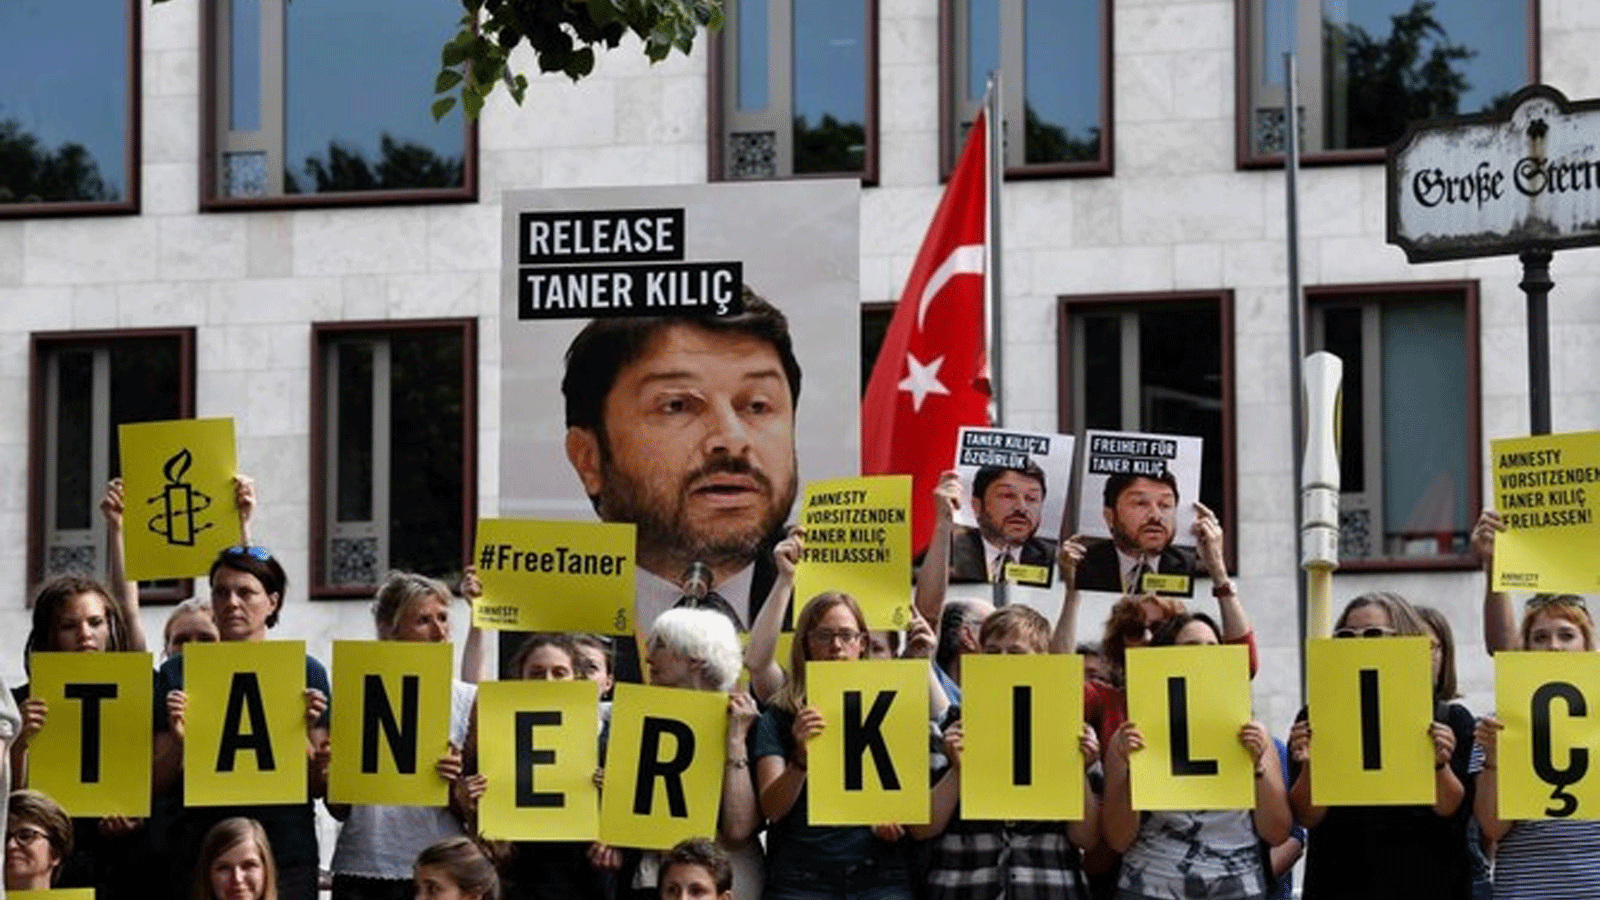 محتجون يطالبون بالإفراج عن رئيس الفرع التركي لمنظمة العفو الدولية تانر كيليش